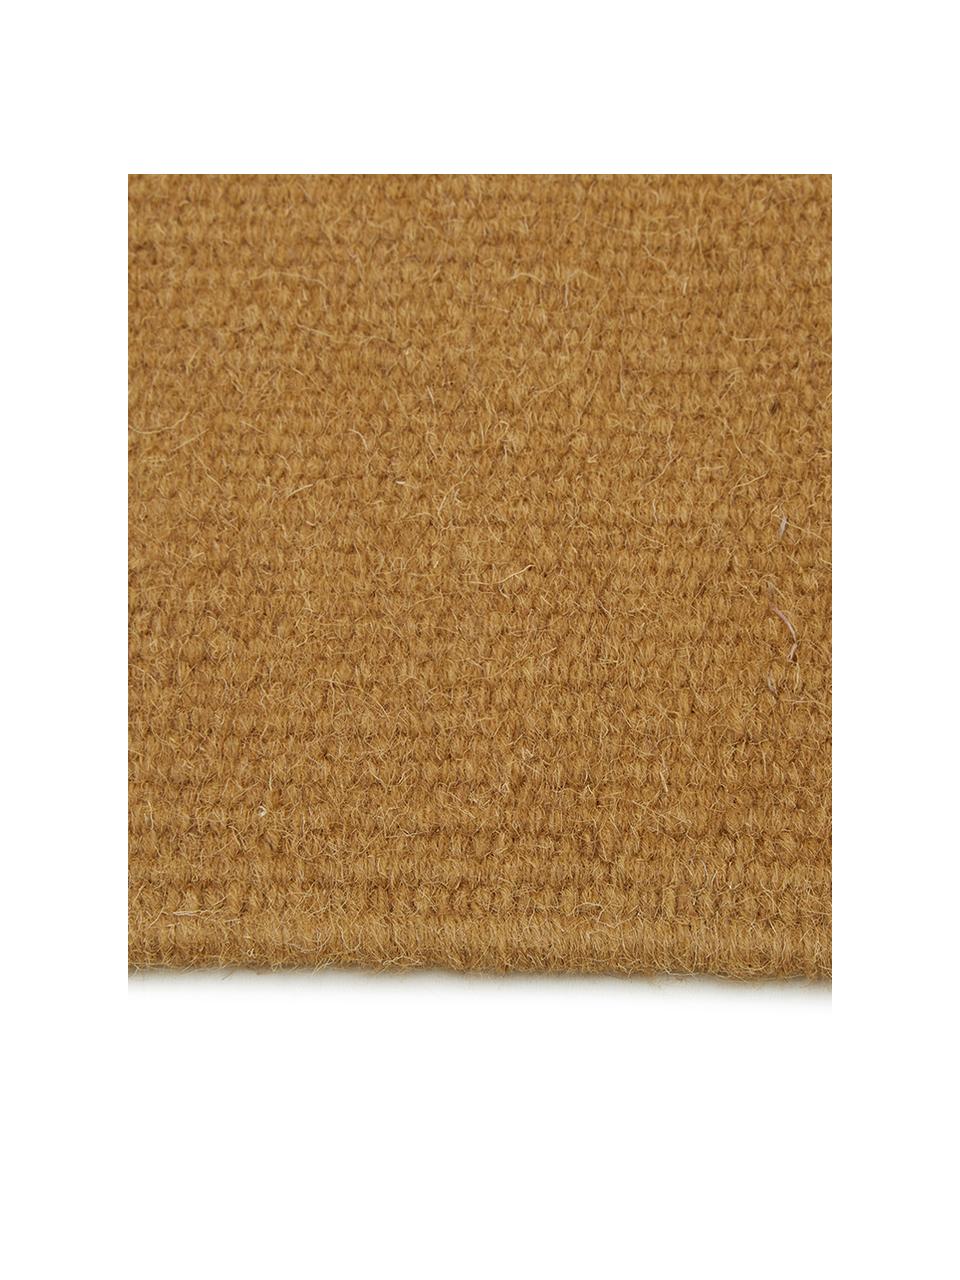 Ručně tkaný vlněný kilimový koberec s třásněmi Rainbow, Okrová žlutá, Š 200 cm, D 300 cm (velikost L)